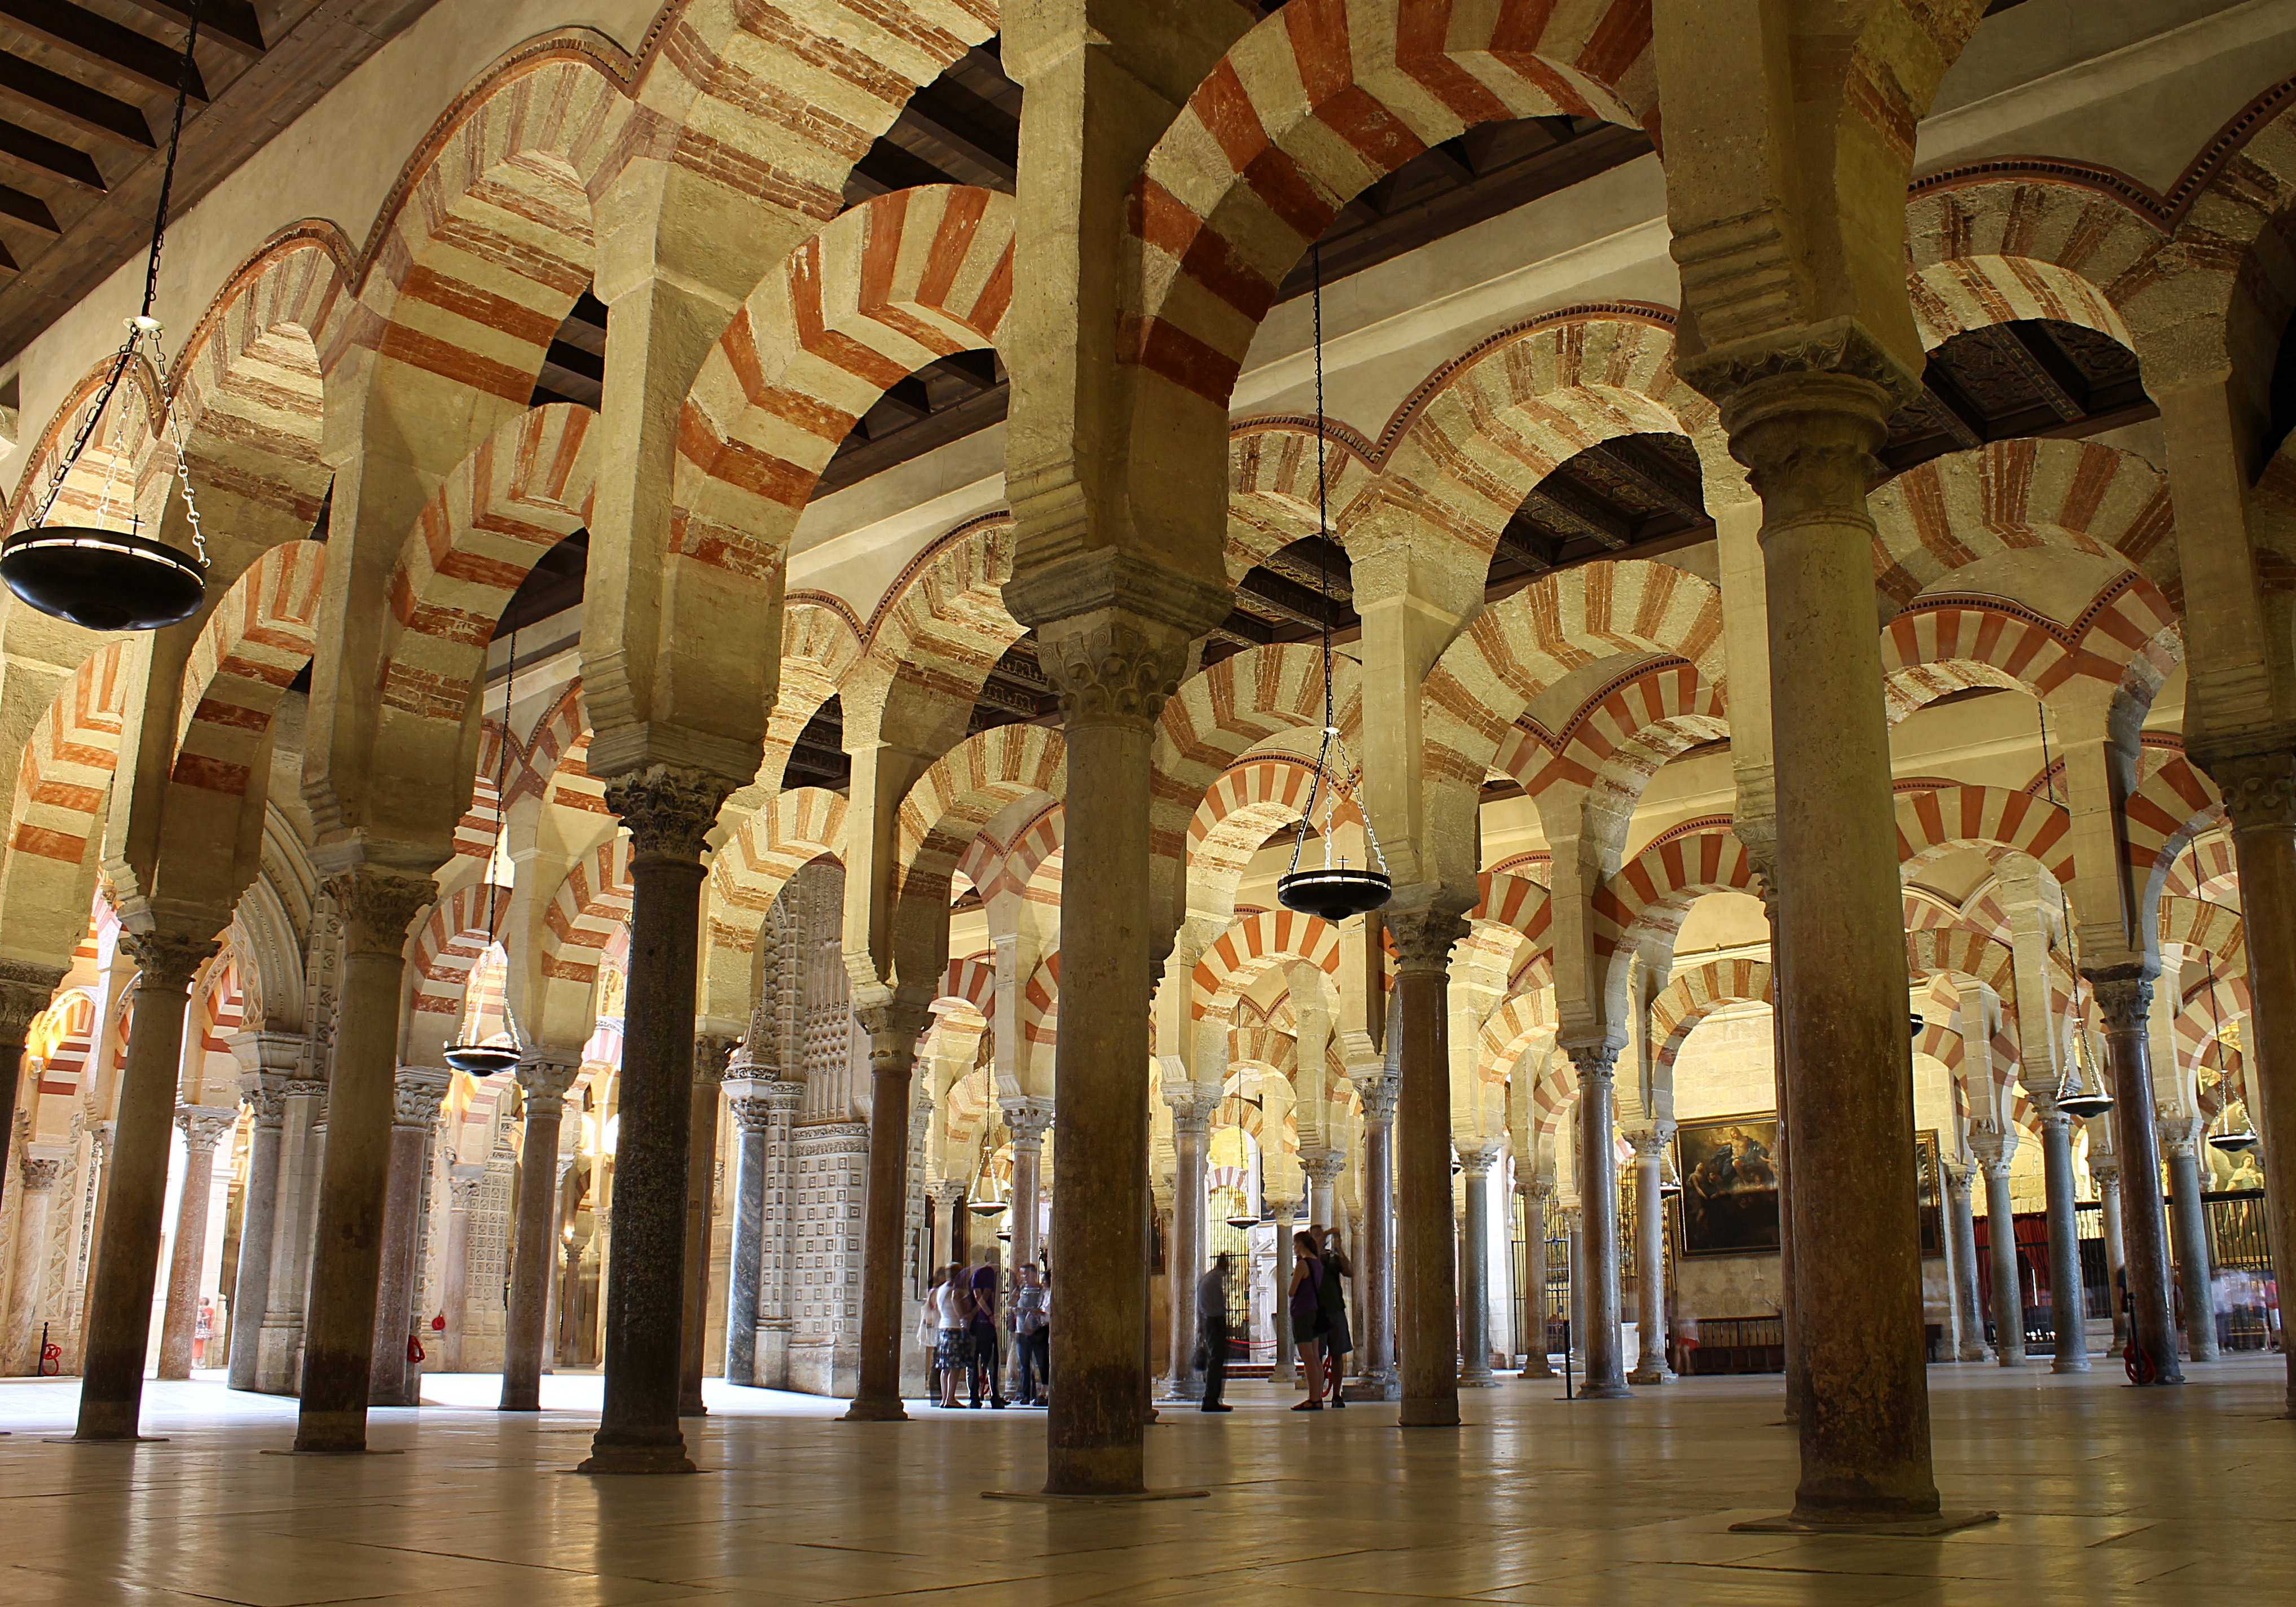 Emirate of Córdoba